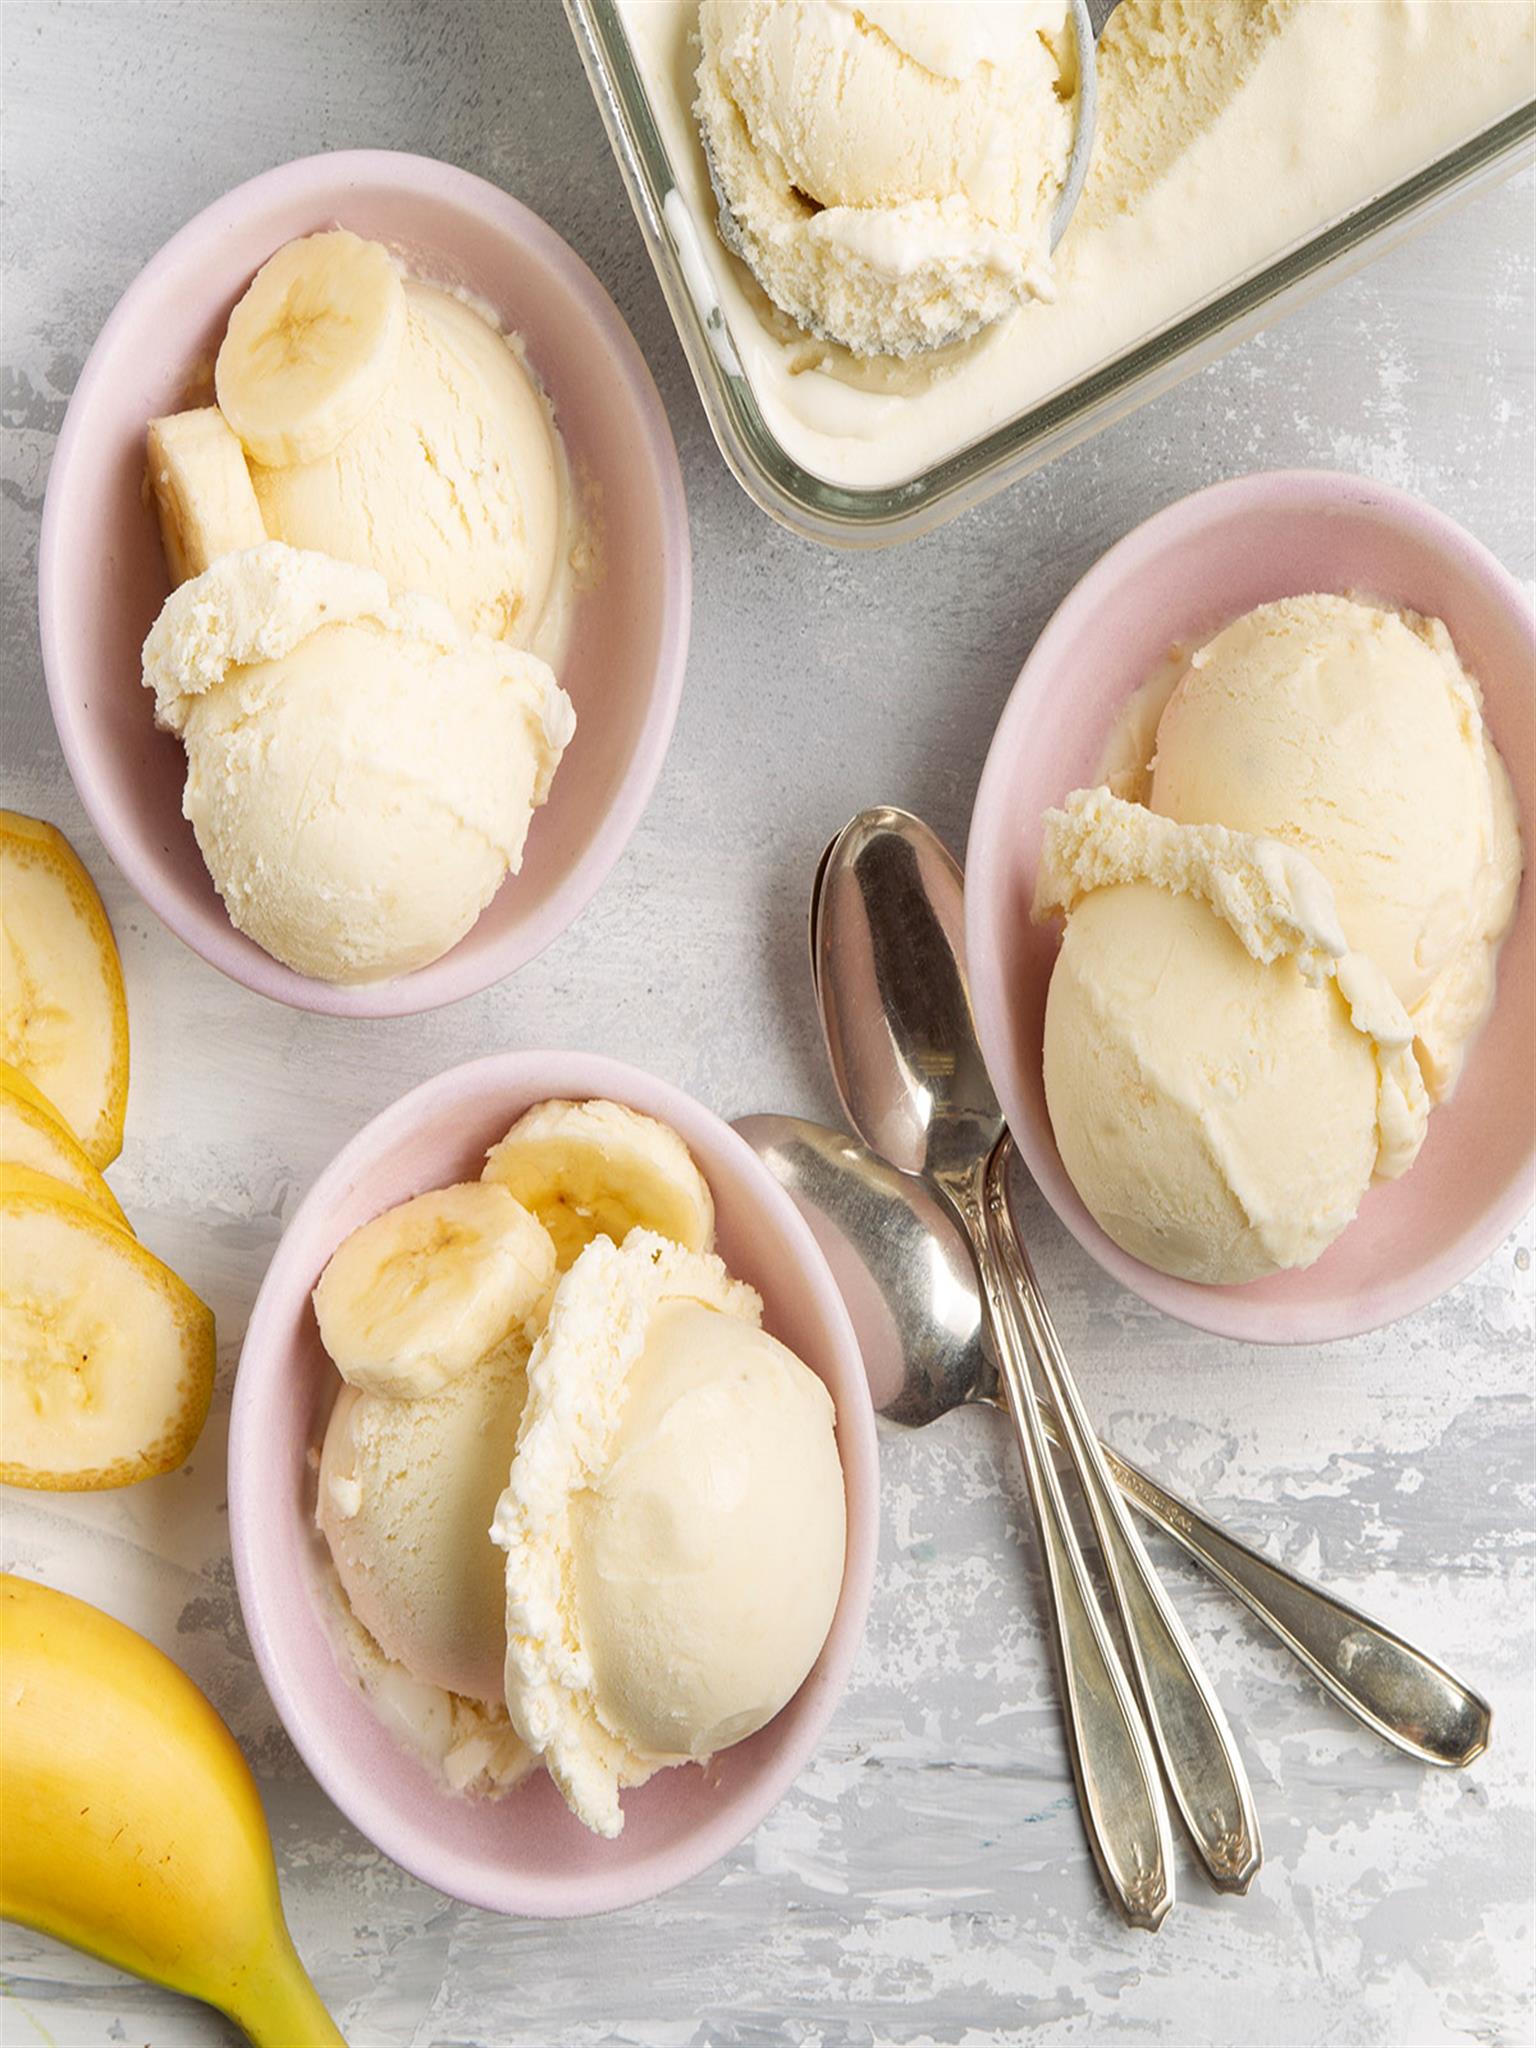 Best Banana Cream Recipe: How to Make